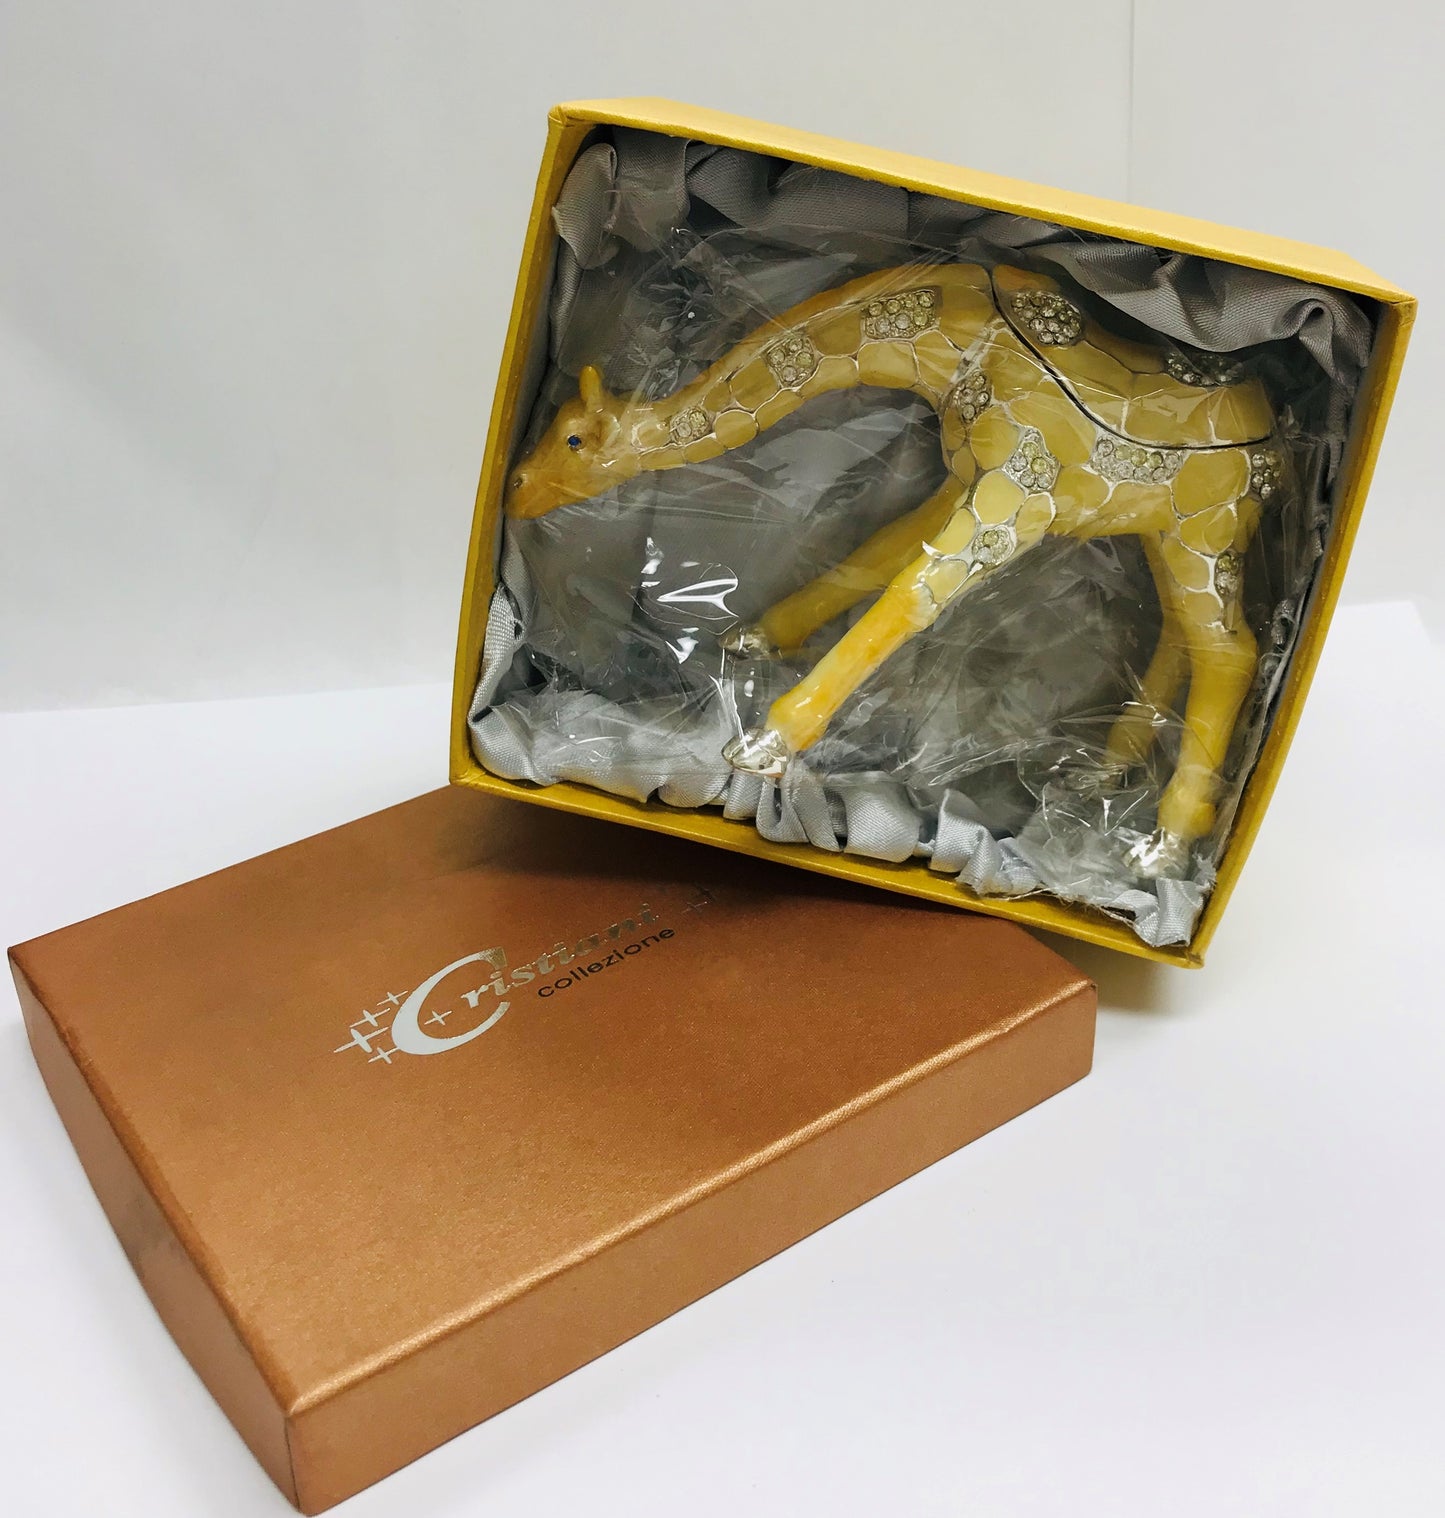 Cristiani Collezione Giraffe Trinket Box.